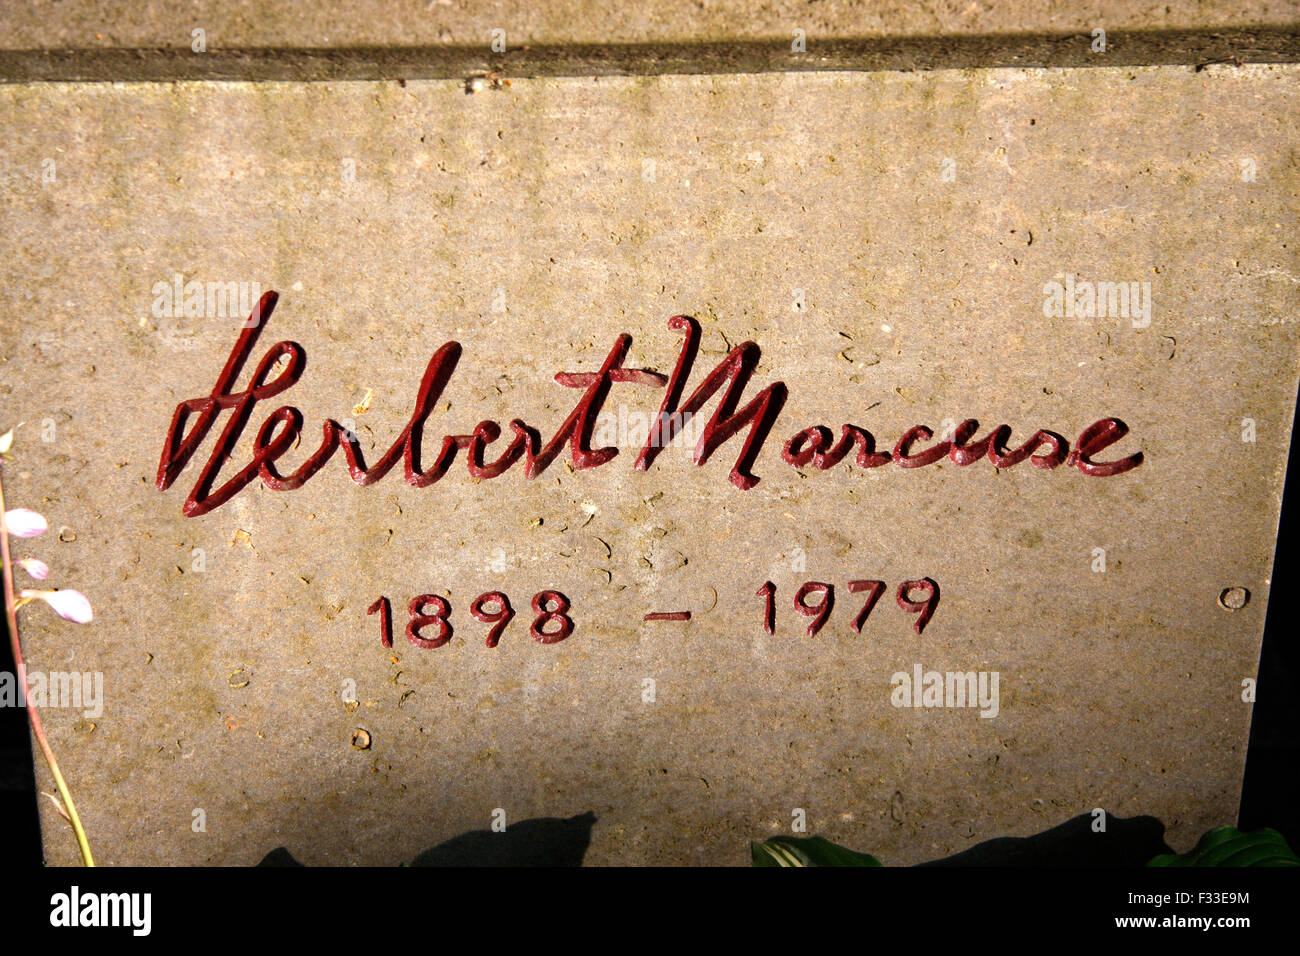 Grabstaette von Herbert Marcuse auf dem Dorotheenstaedtischen Friedhof, Berlin-Mitte. Stock Photo